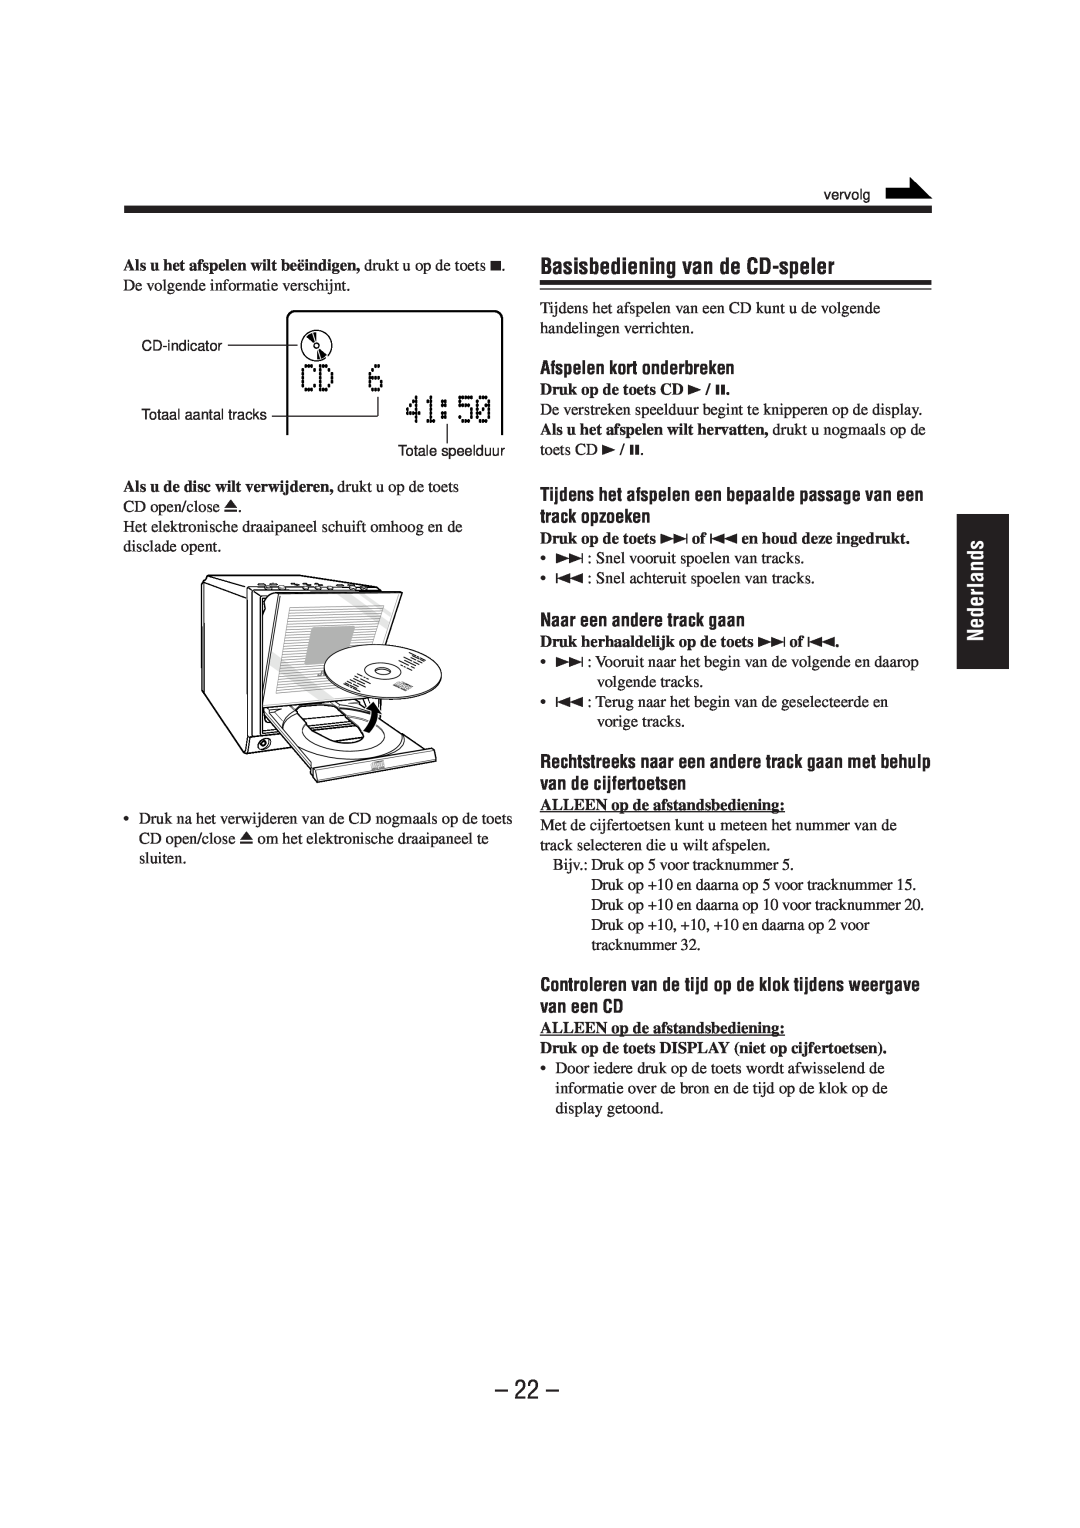 JVC UX-A52R manual Basisbediening van de CD-speler, Afspelen kort onderbreken, Naar een andere track gaan, Nederlands 